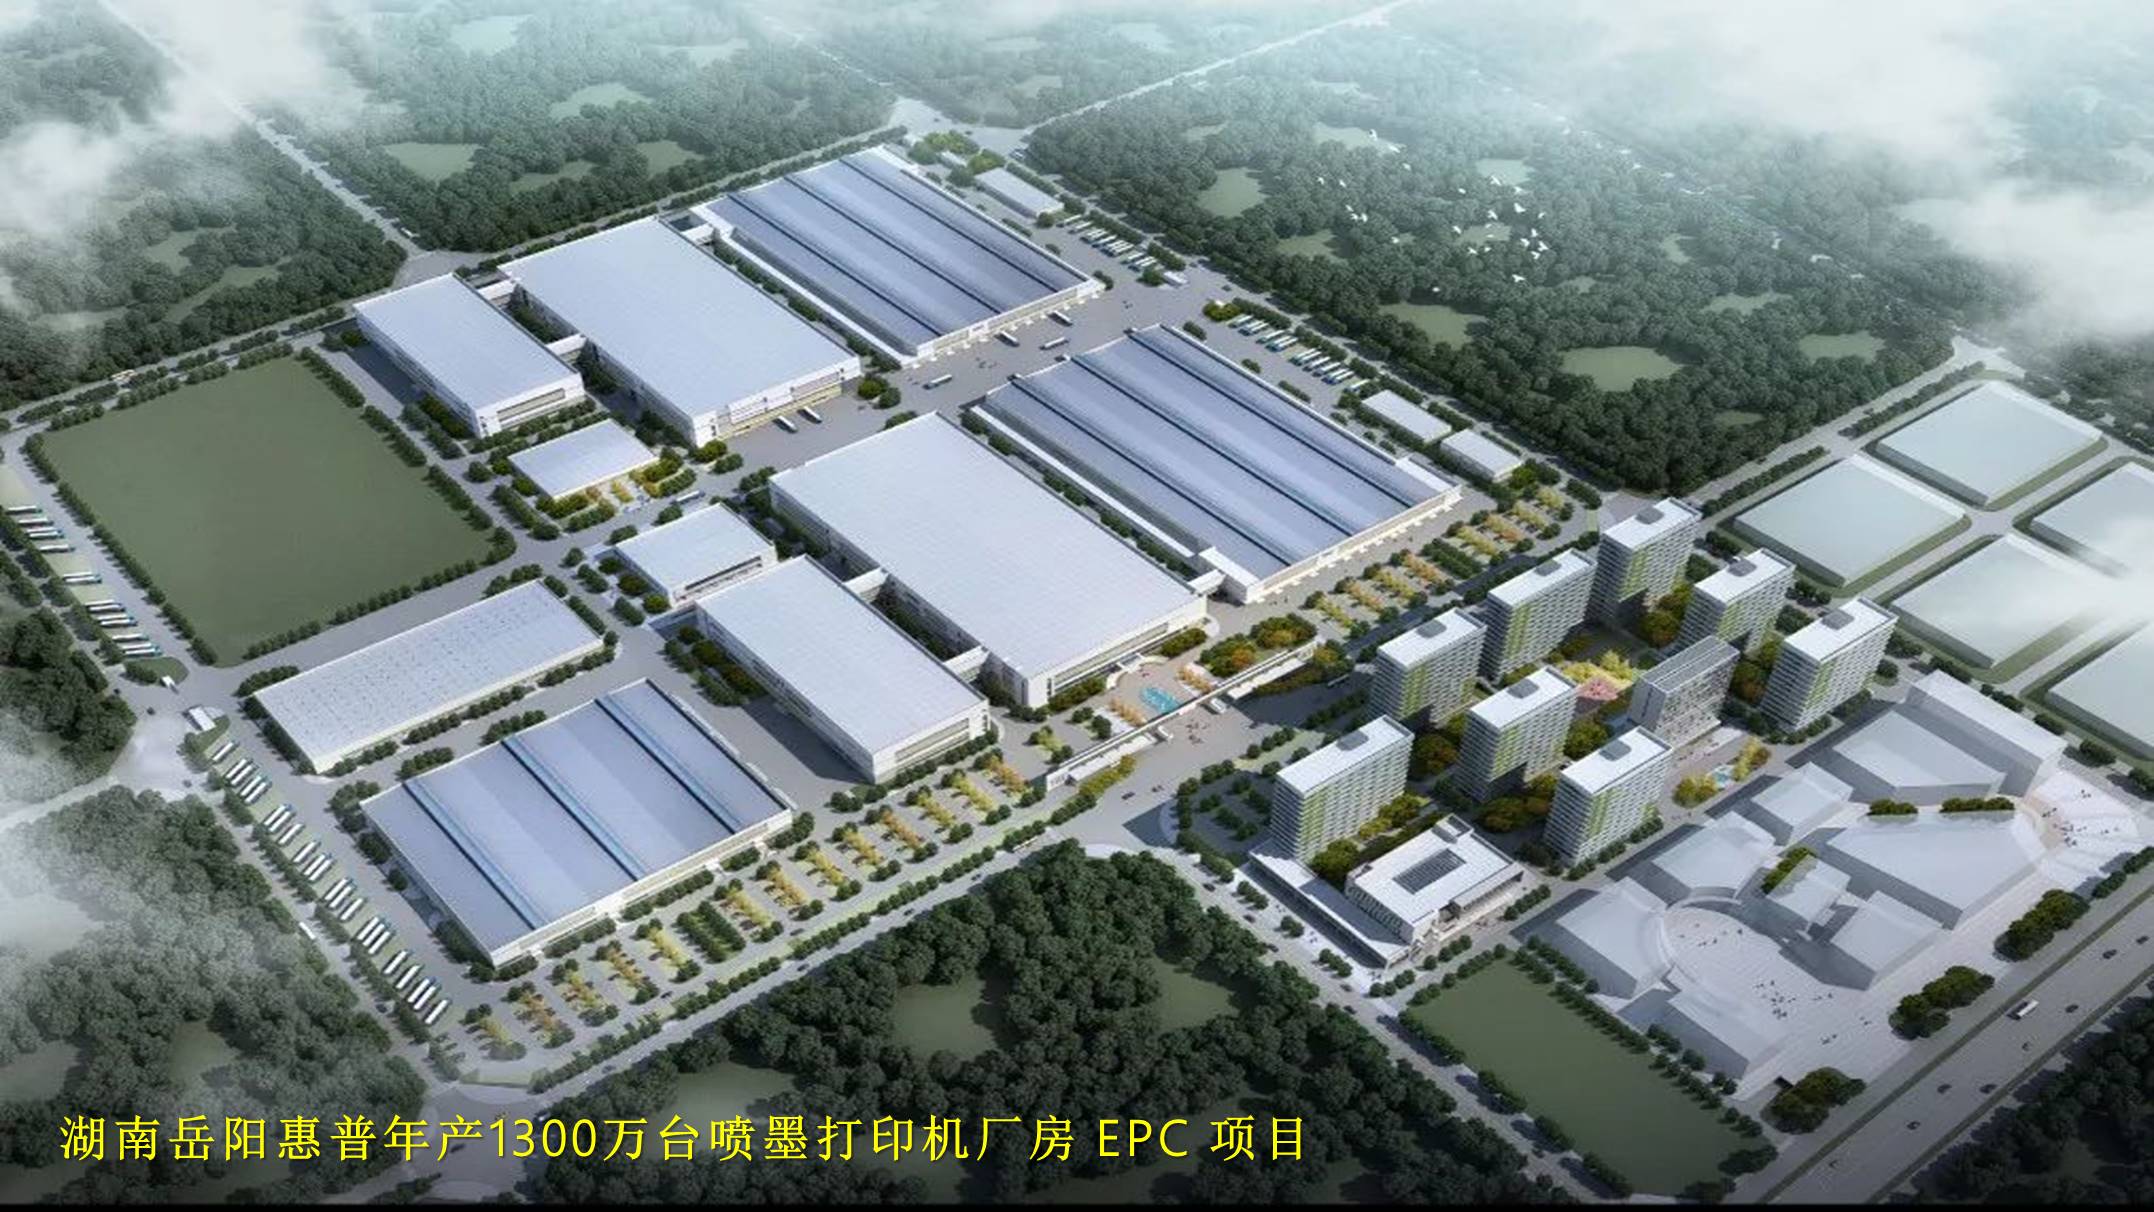 4、湖南岳阳惠普年产1300万台喷墨打印机厂房 EPC项目.jpg